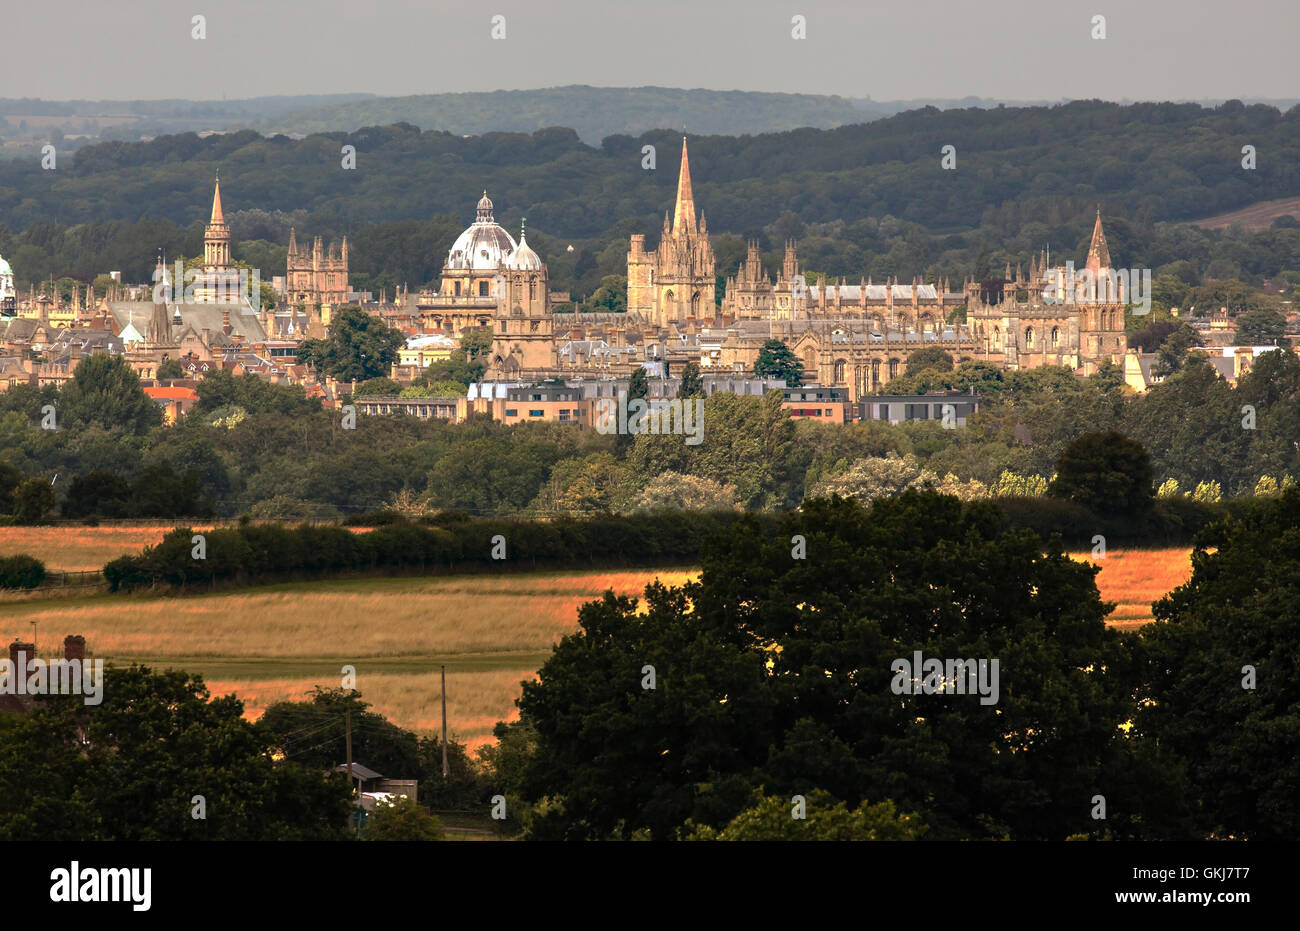 Vista delle guglie sognanti dell'Università di Oxford, in Inghilterra, prese dall'alto dei terreni agricoli locali Foto Stock